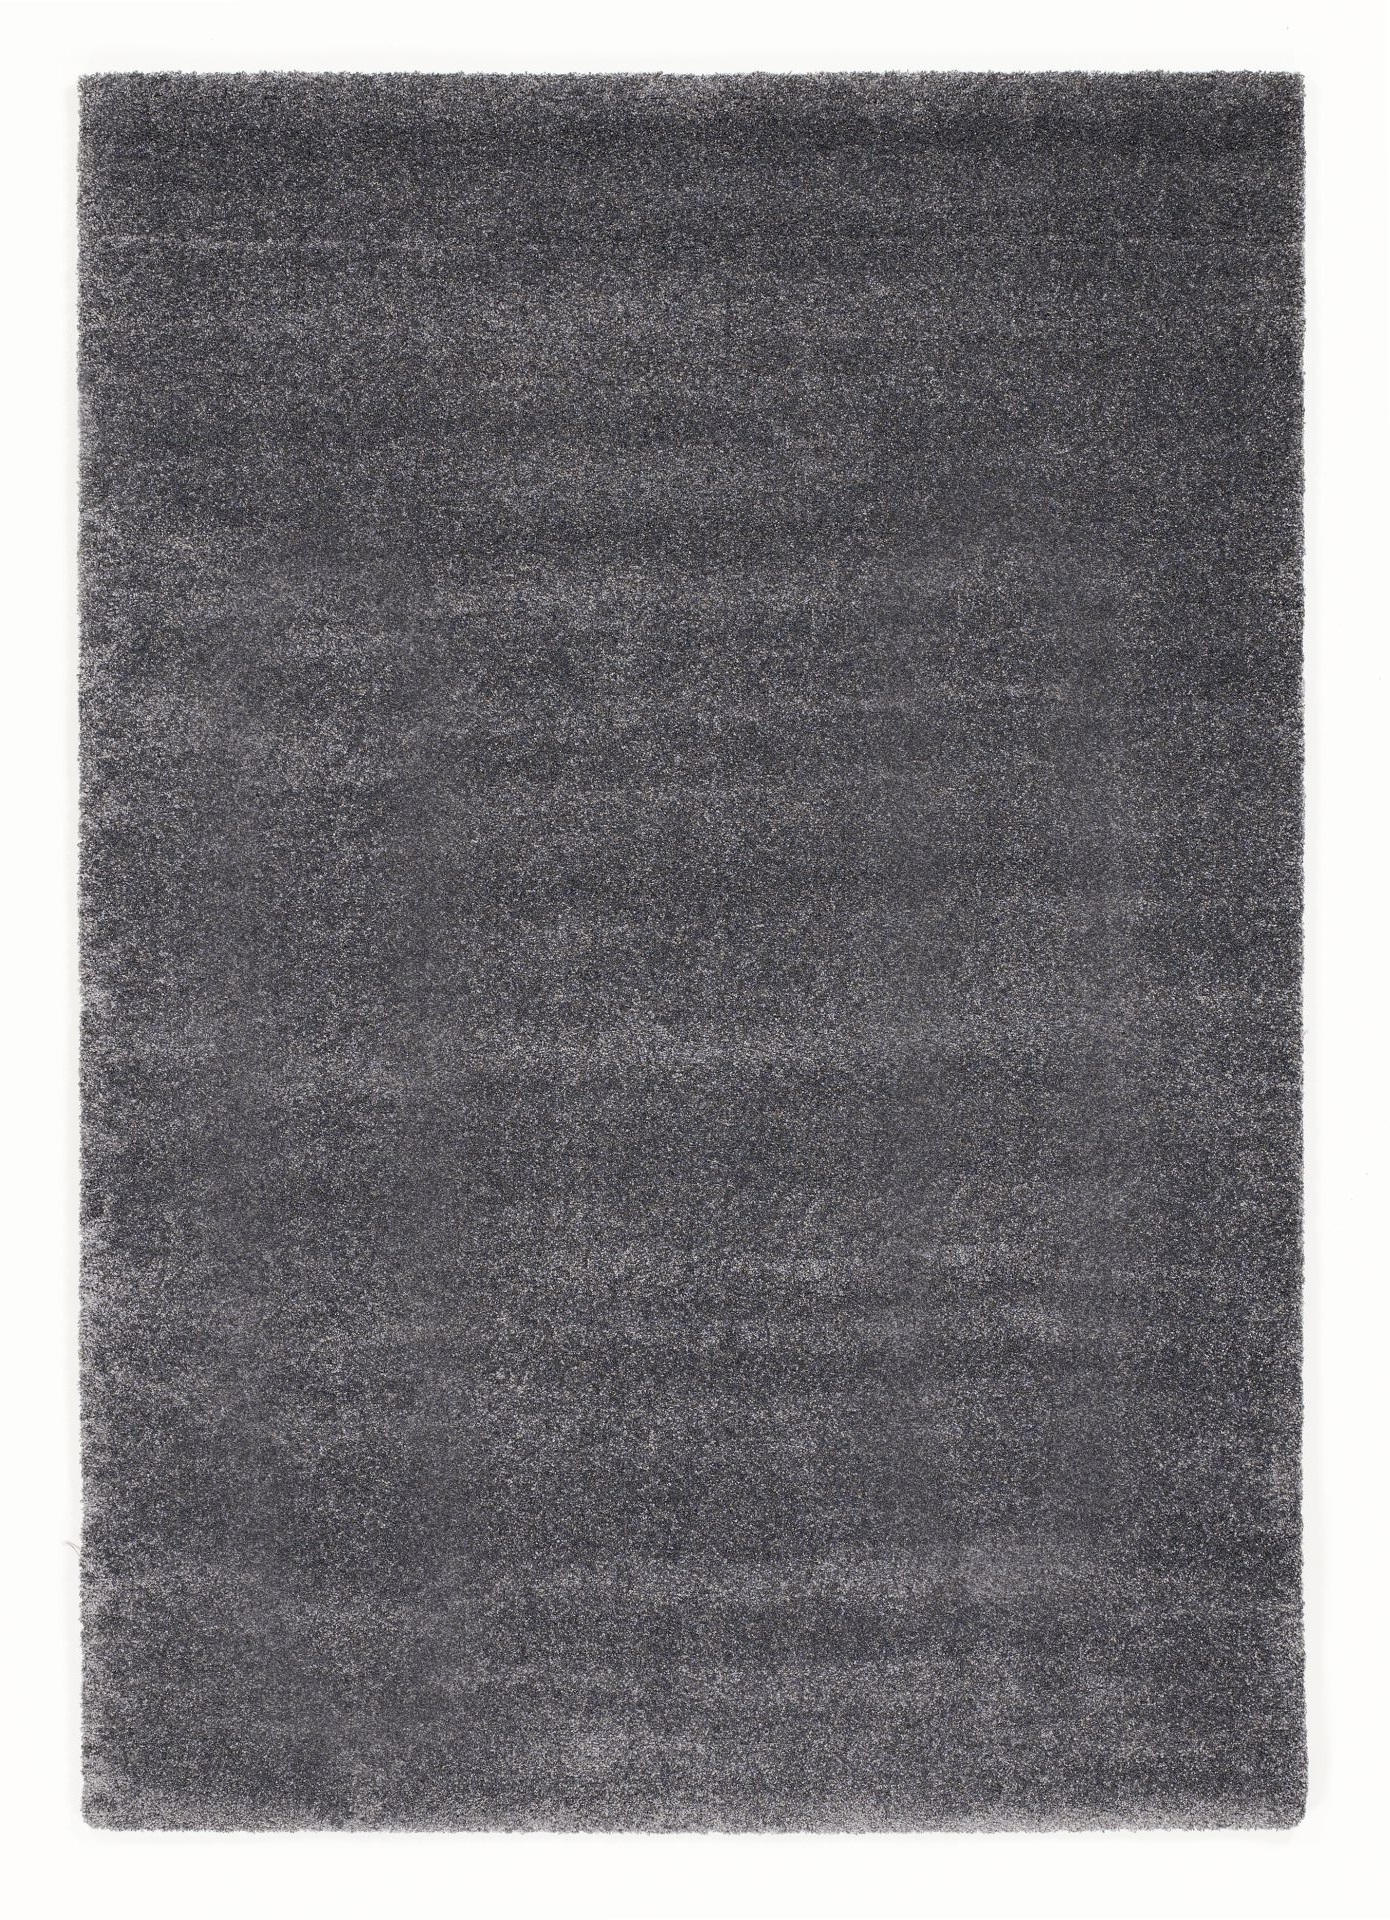 HOCHFLORTEPPICH 65/130 cm Bellevue  - Dunkelgrau, Basics, Textil (65/130cm) - Novel